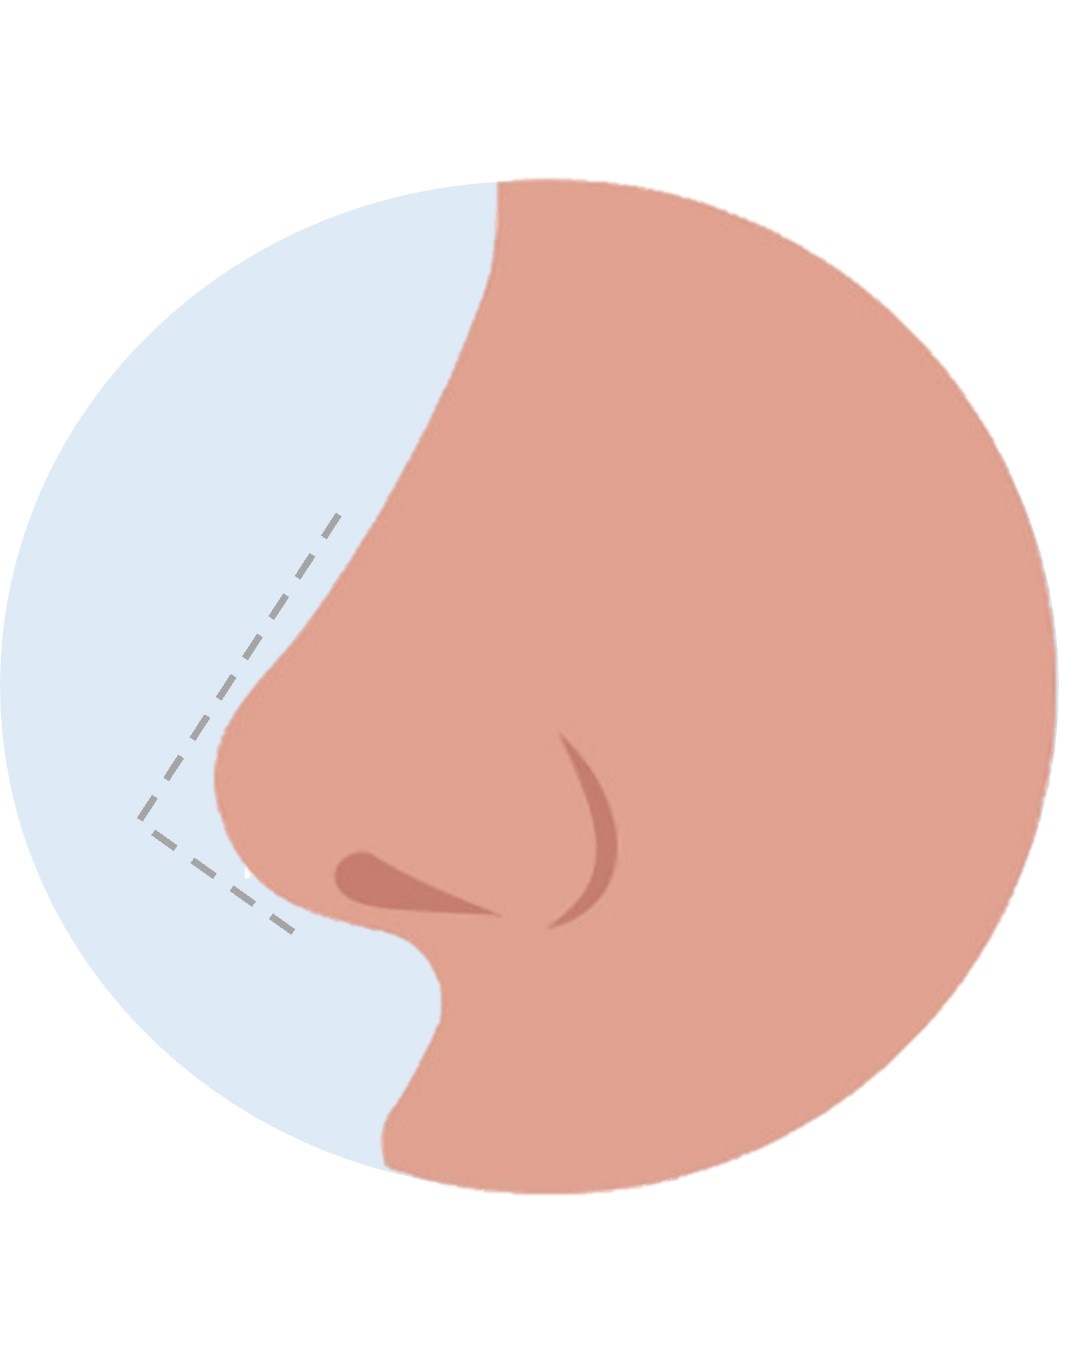 sharper nose tip - nose tip reduction